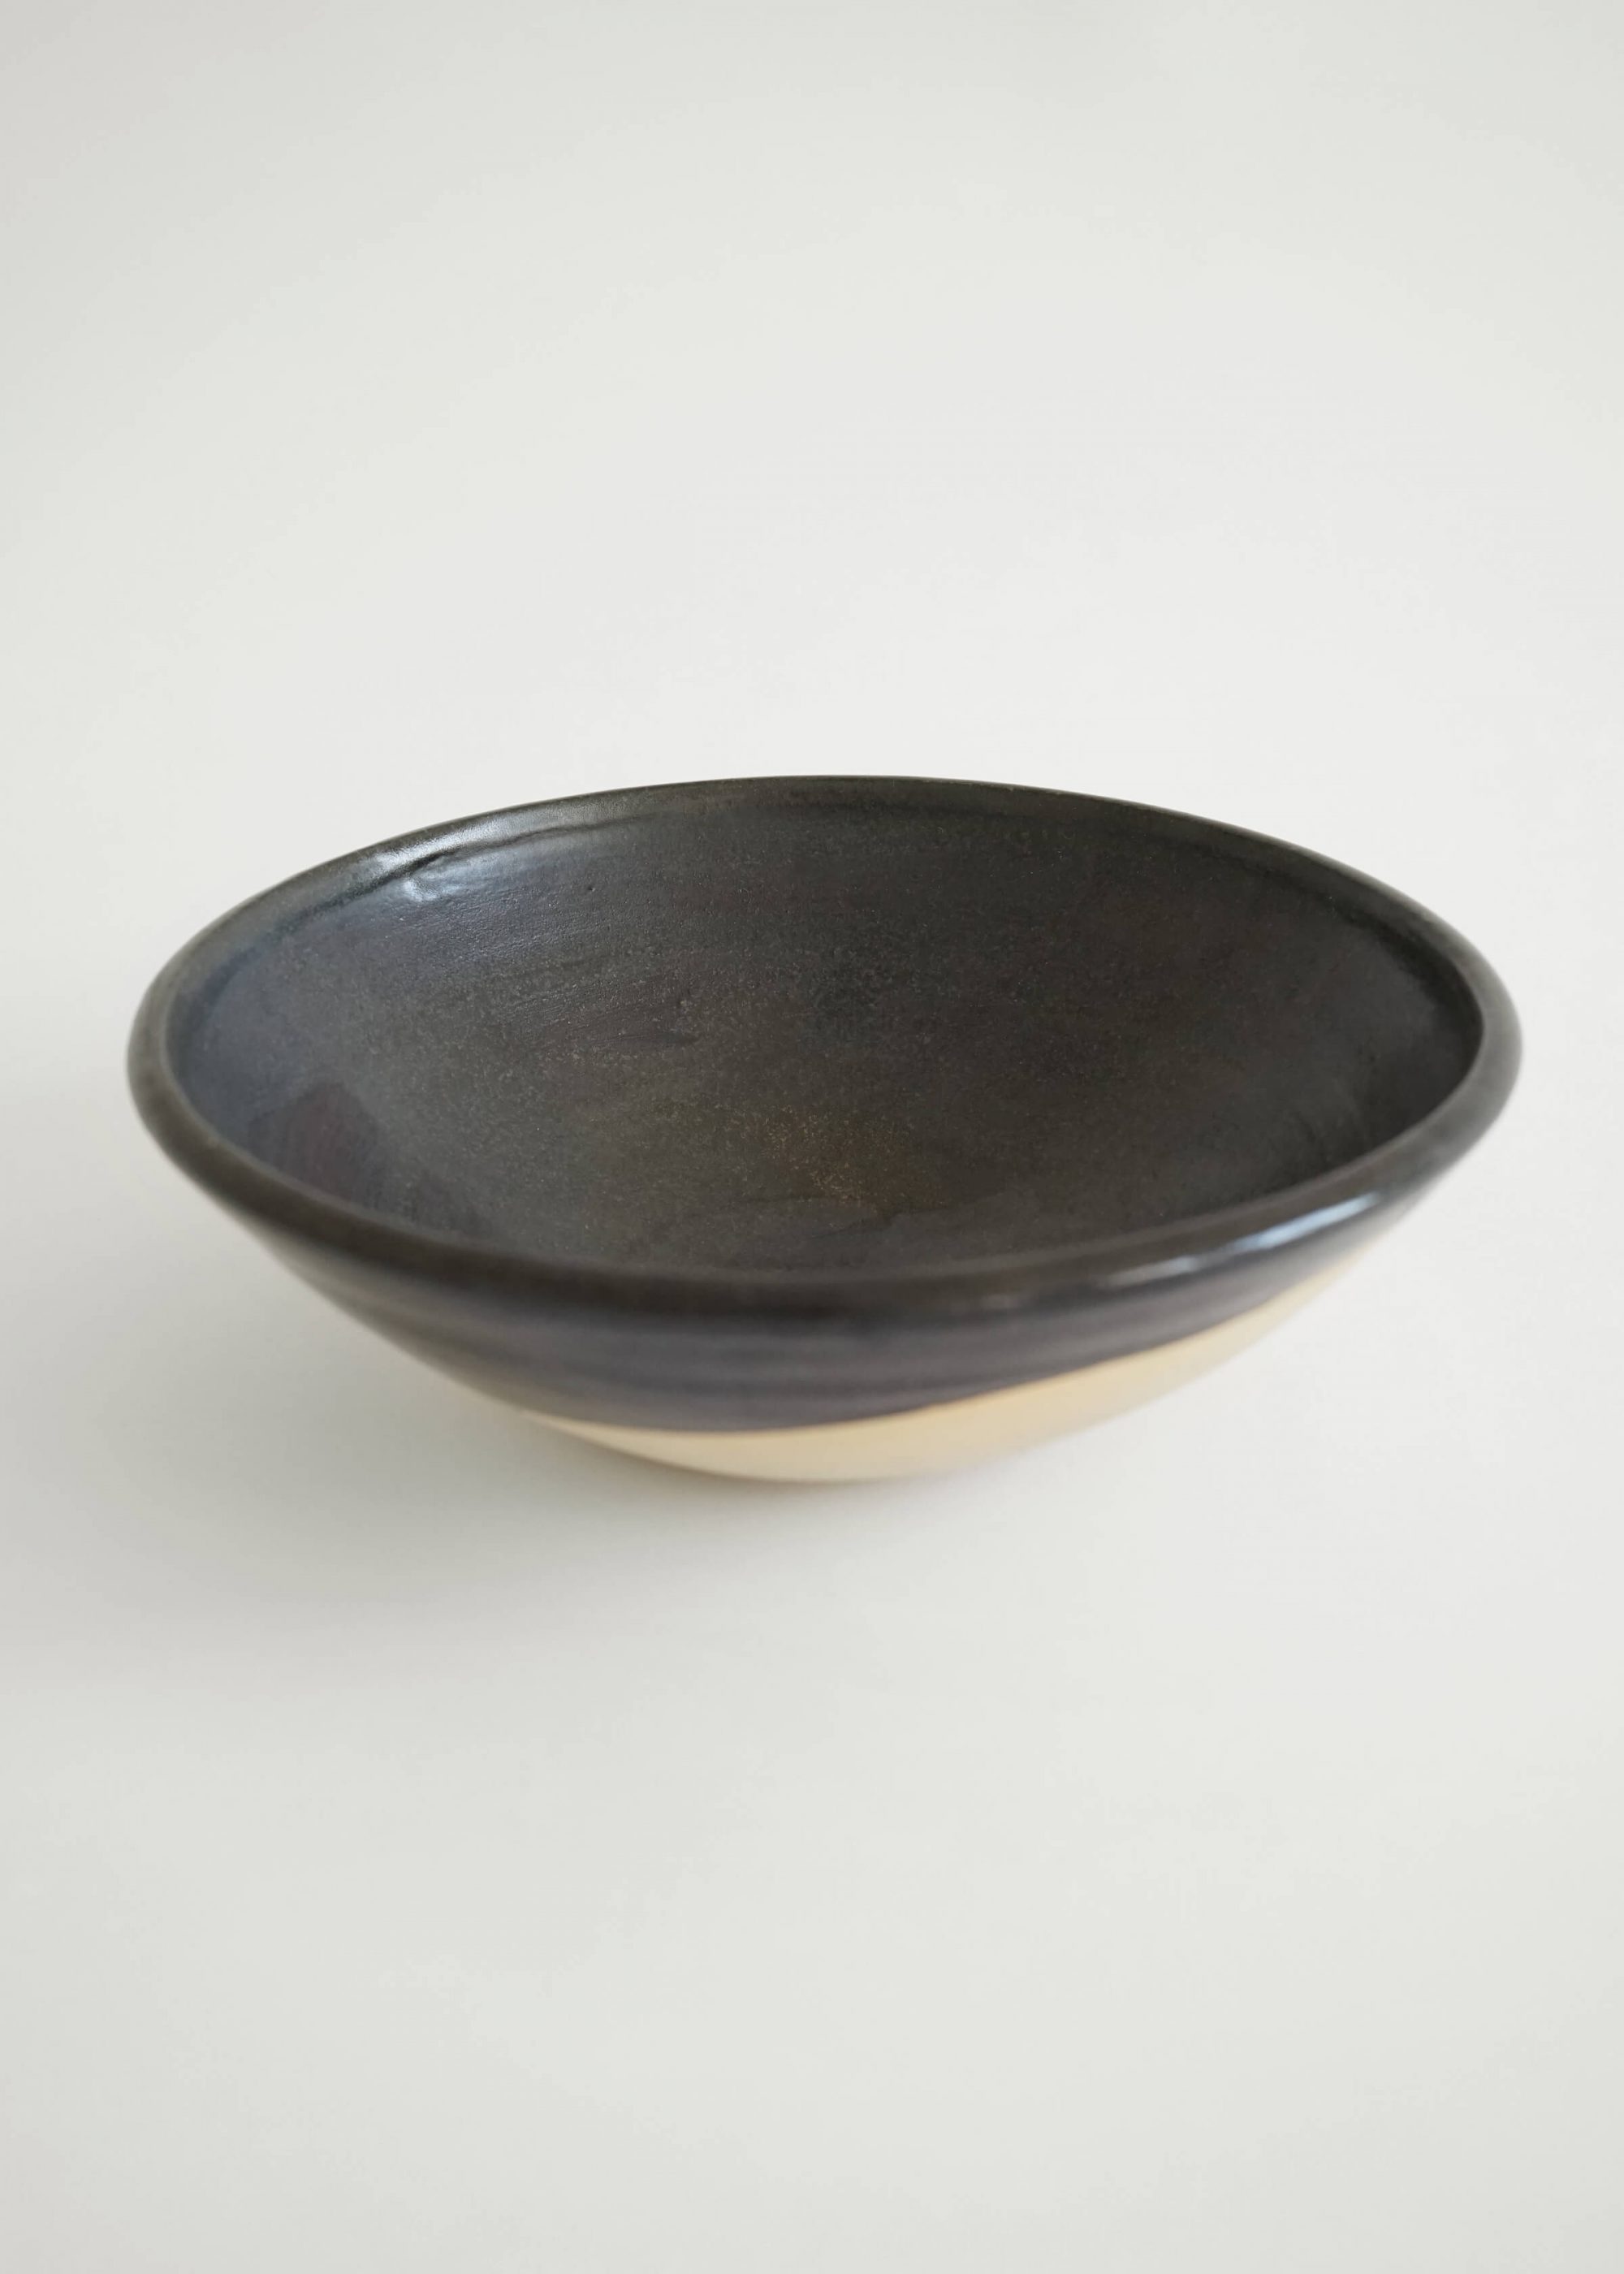 Product image for »Baba« Black Semi-glazed Conical Stoneware Bowl